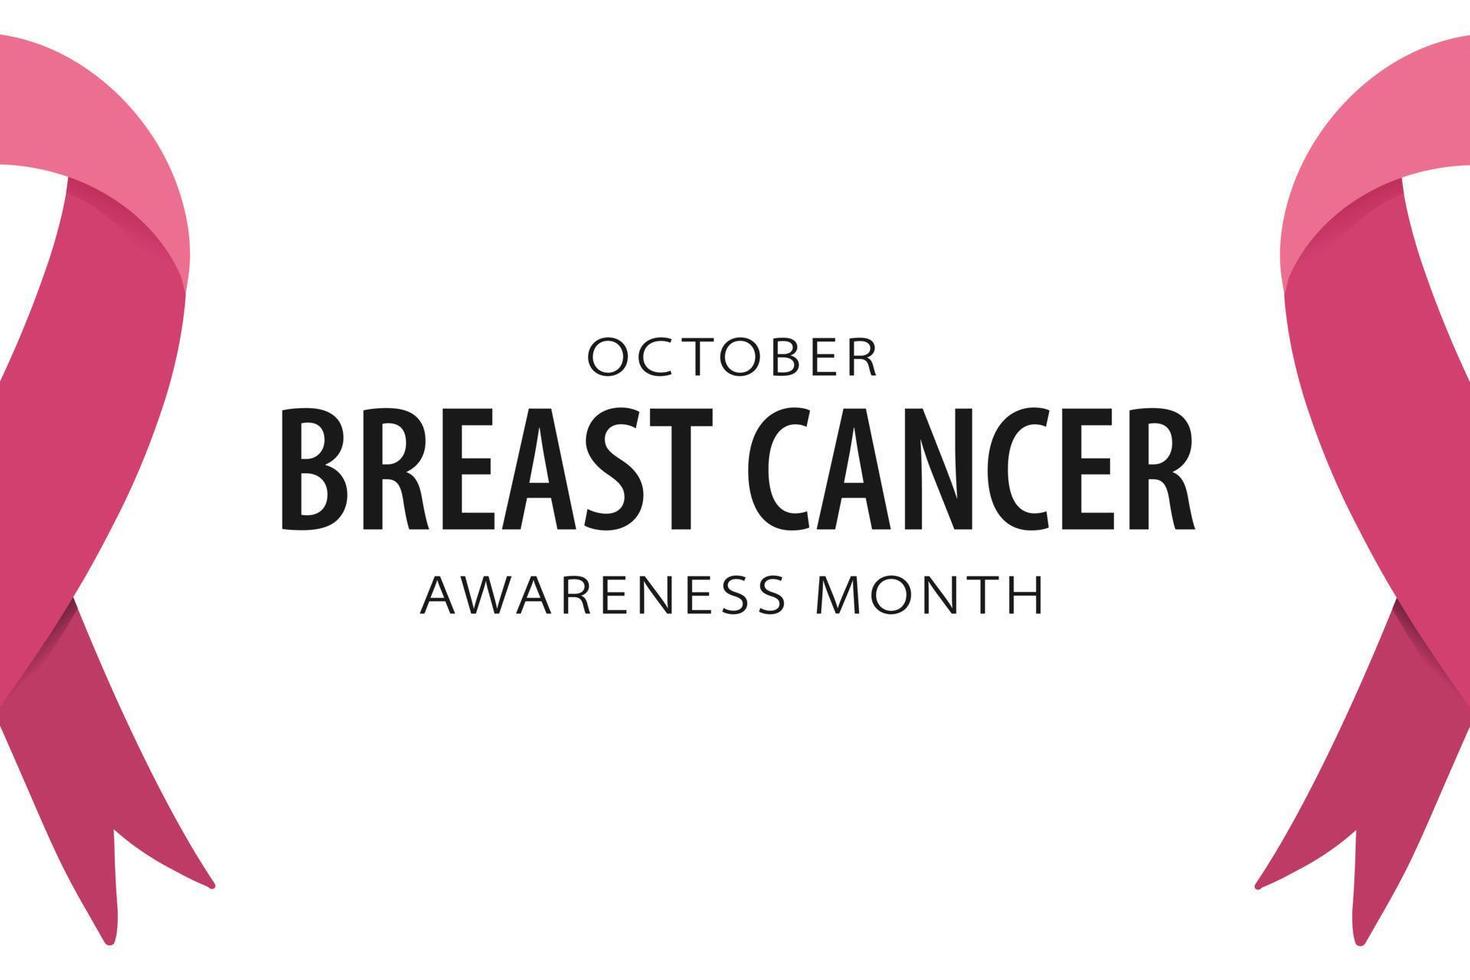 bröst cancer medvetenhet månad oktober baner med rosa band. kopia Plats för text. enkel minimalistisk affisch design. vektor illustration isolerat på vit bakgrund.